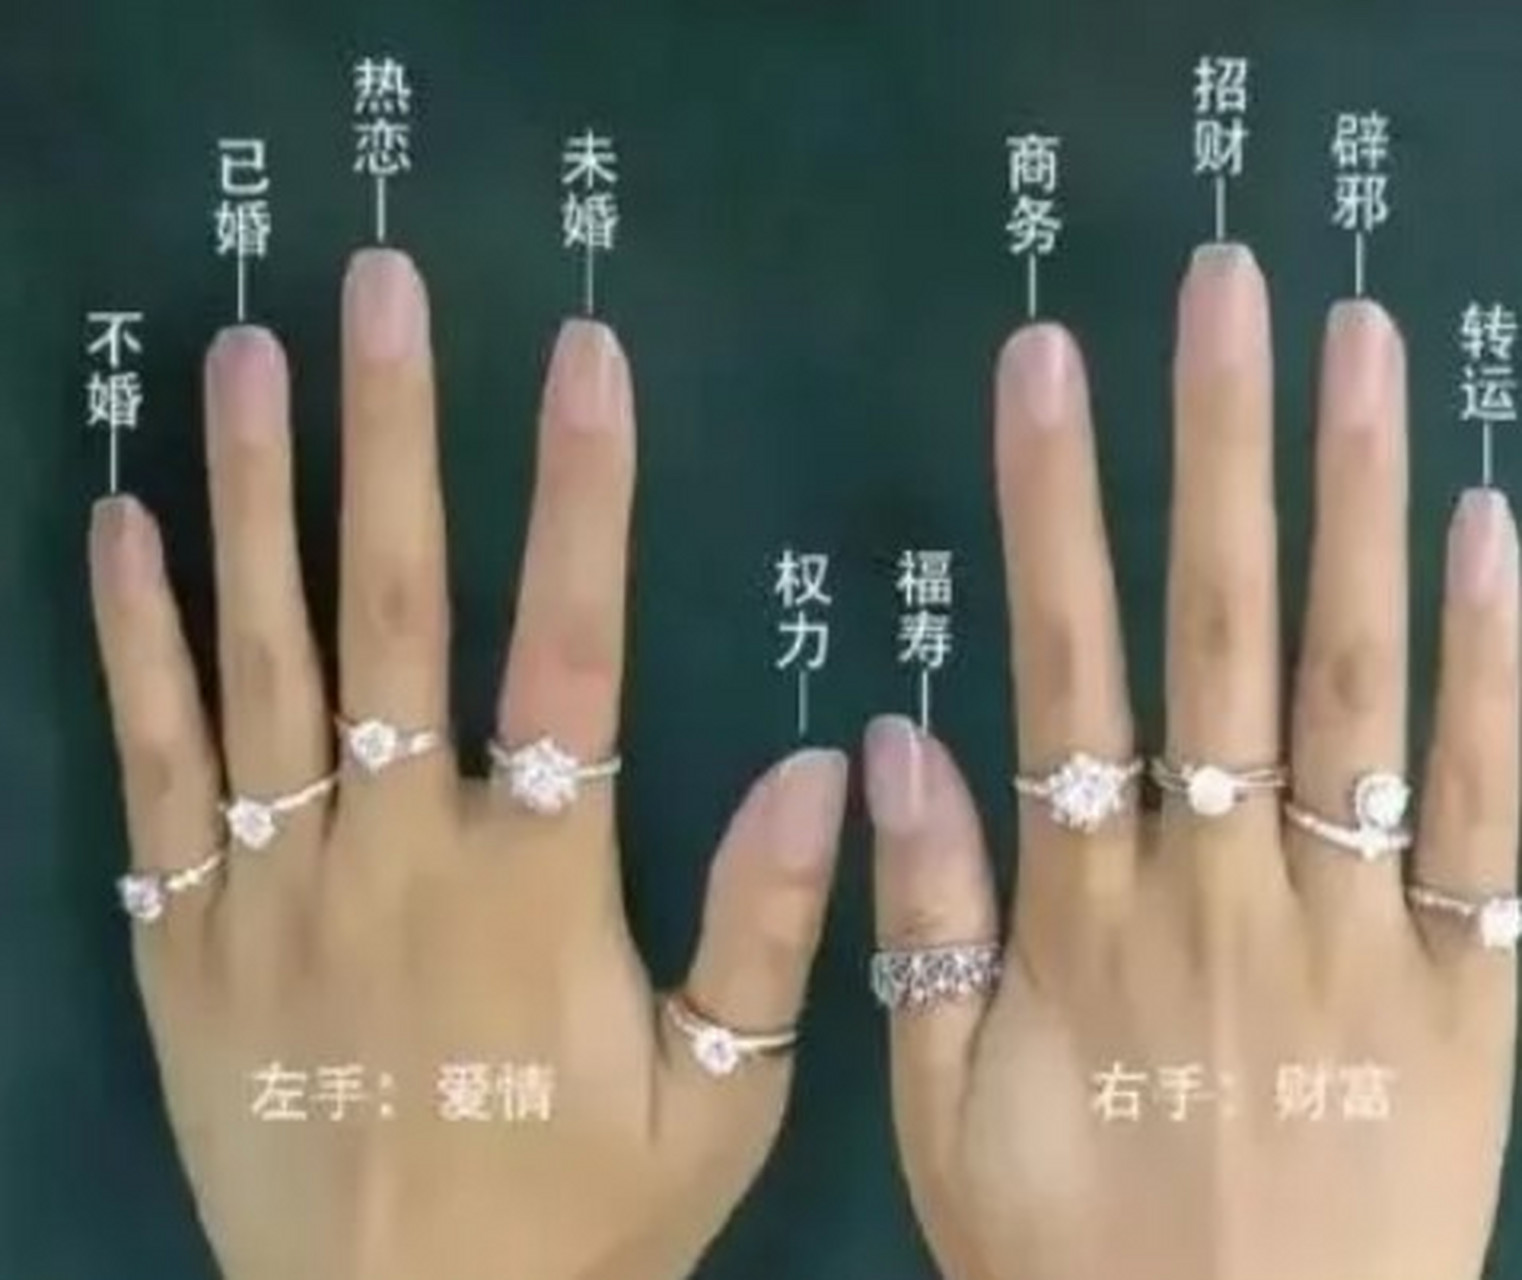 以下是手指戴戒指的一些常见含义:  左手小指:在一些文化中,左手小指